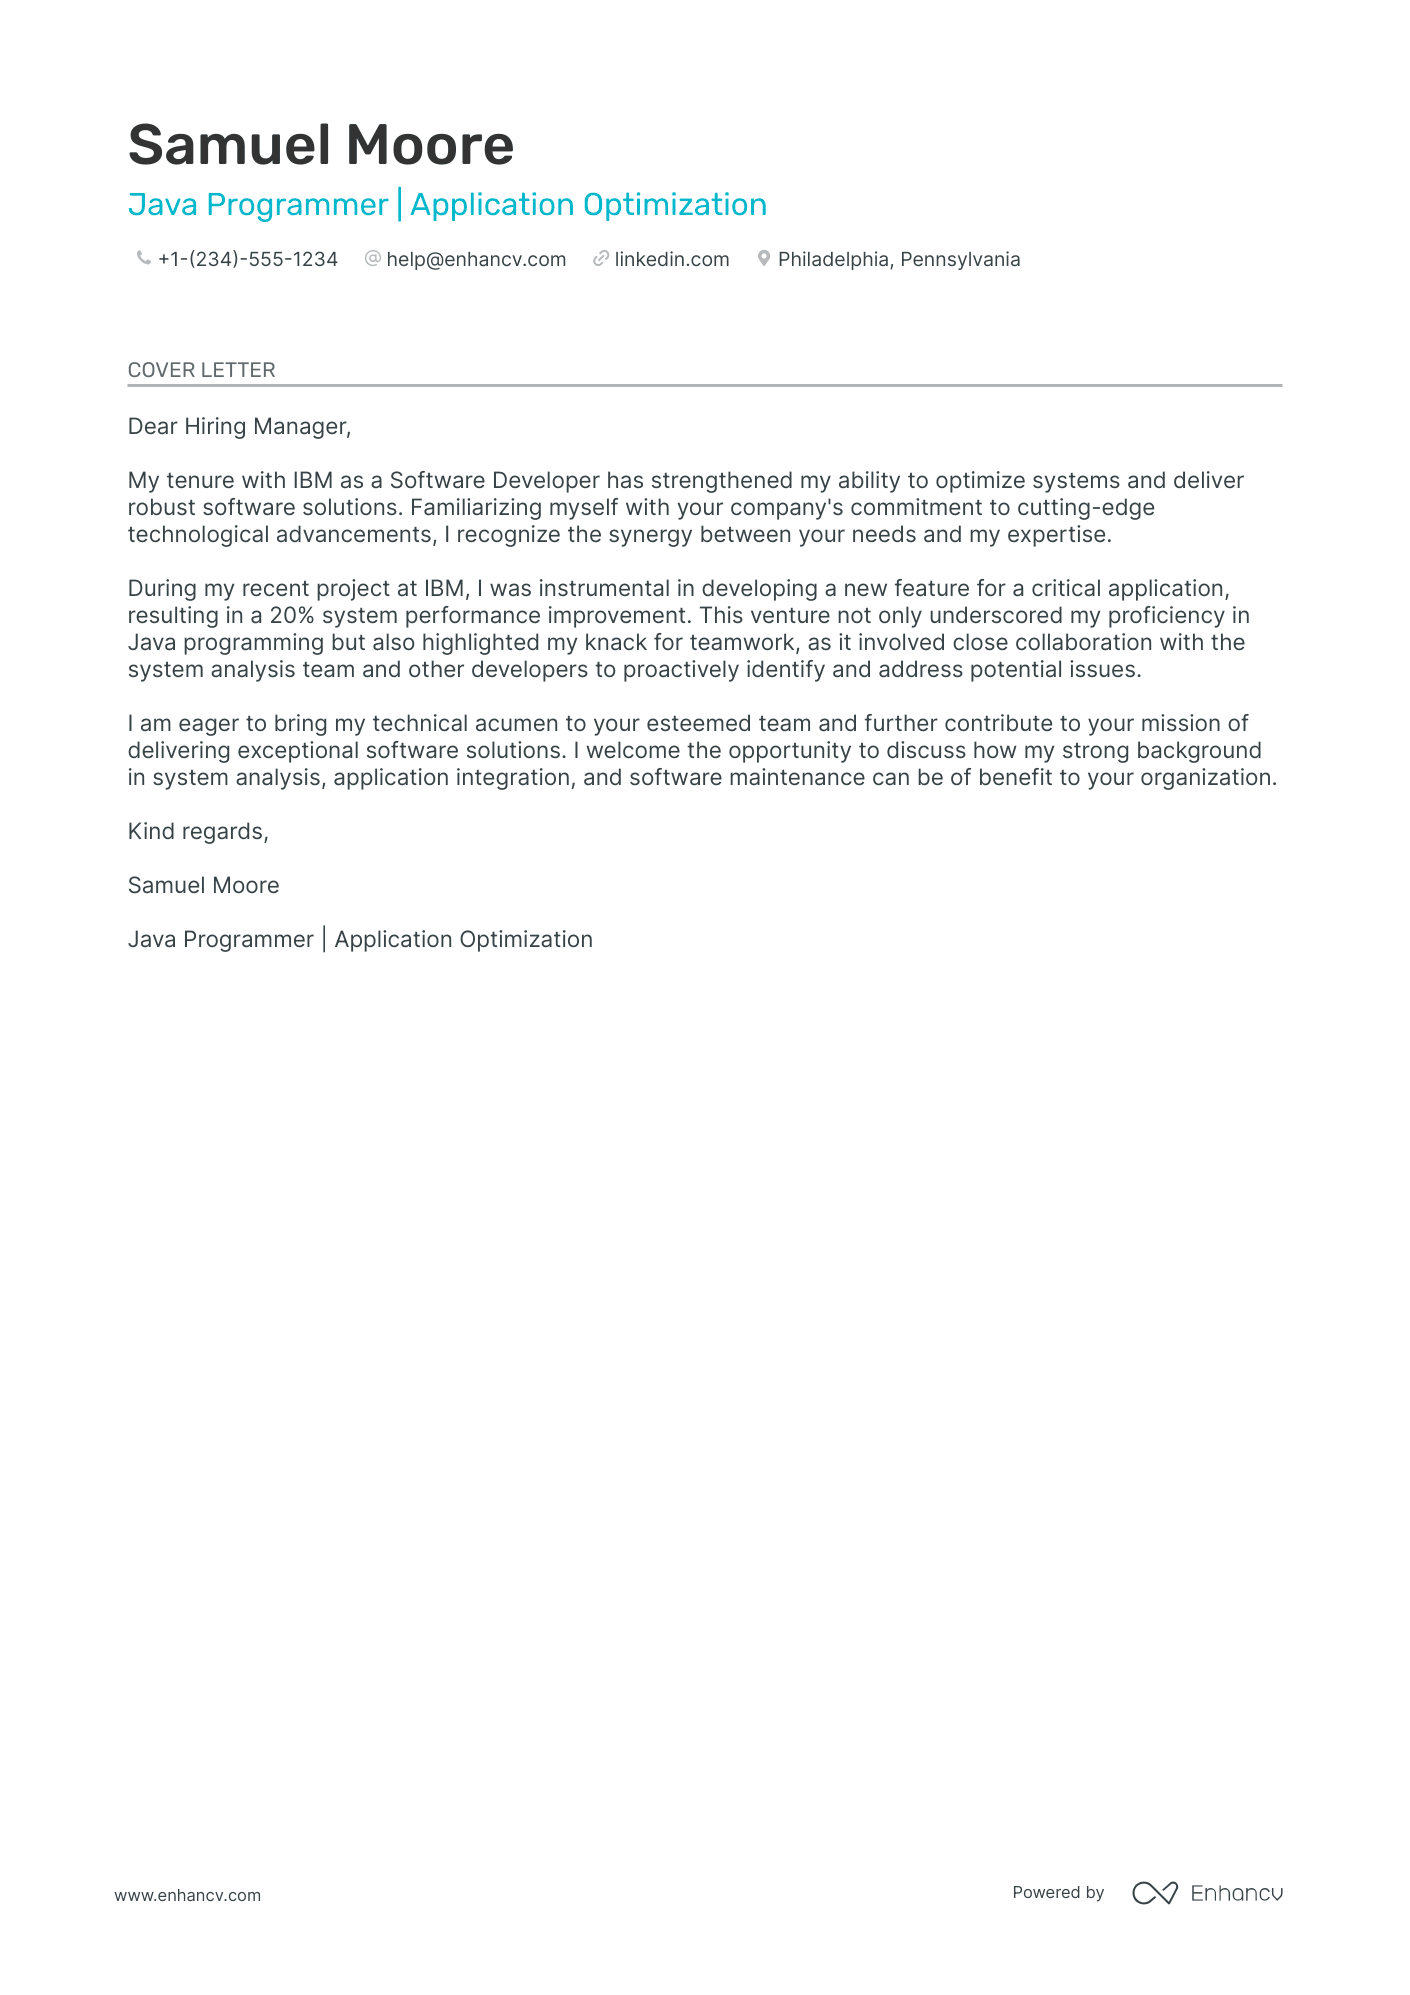 cover letter for programming job application